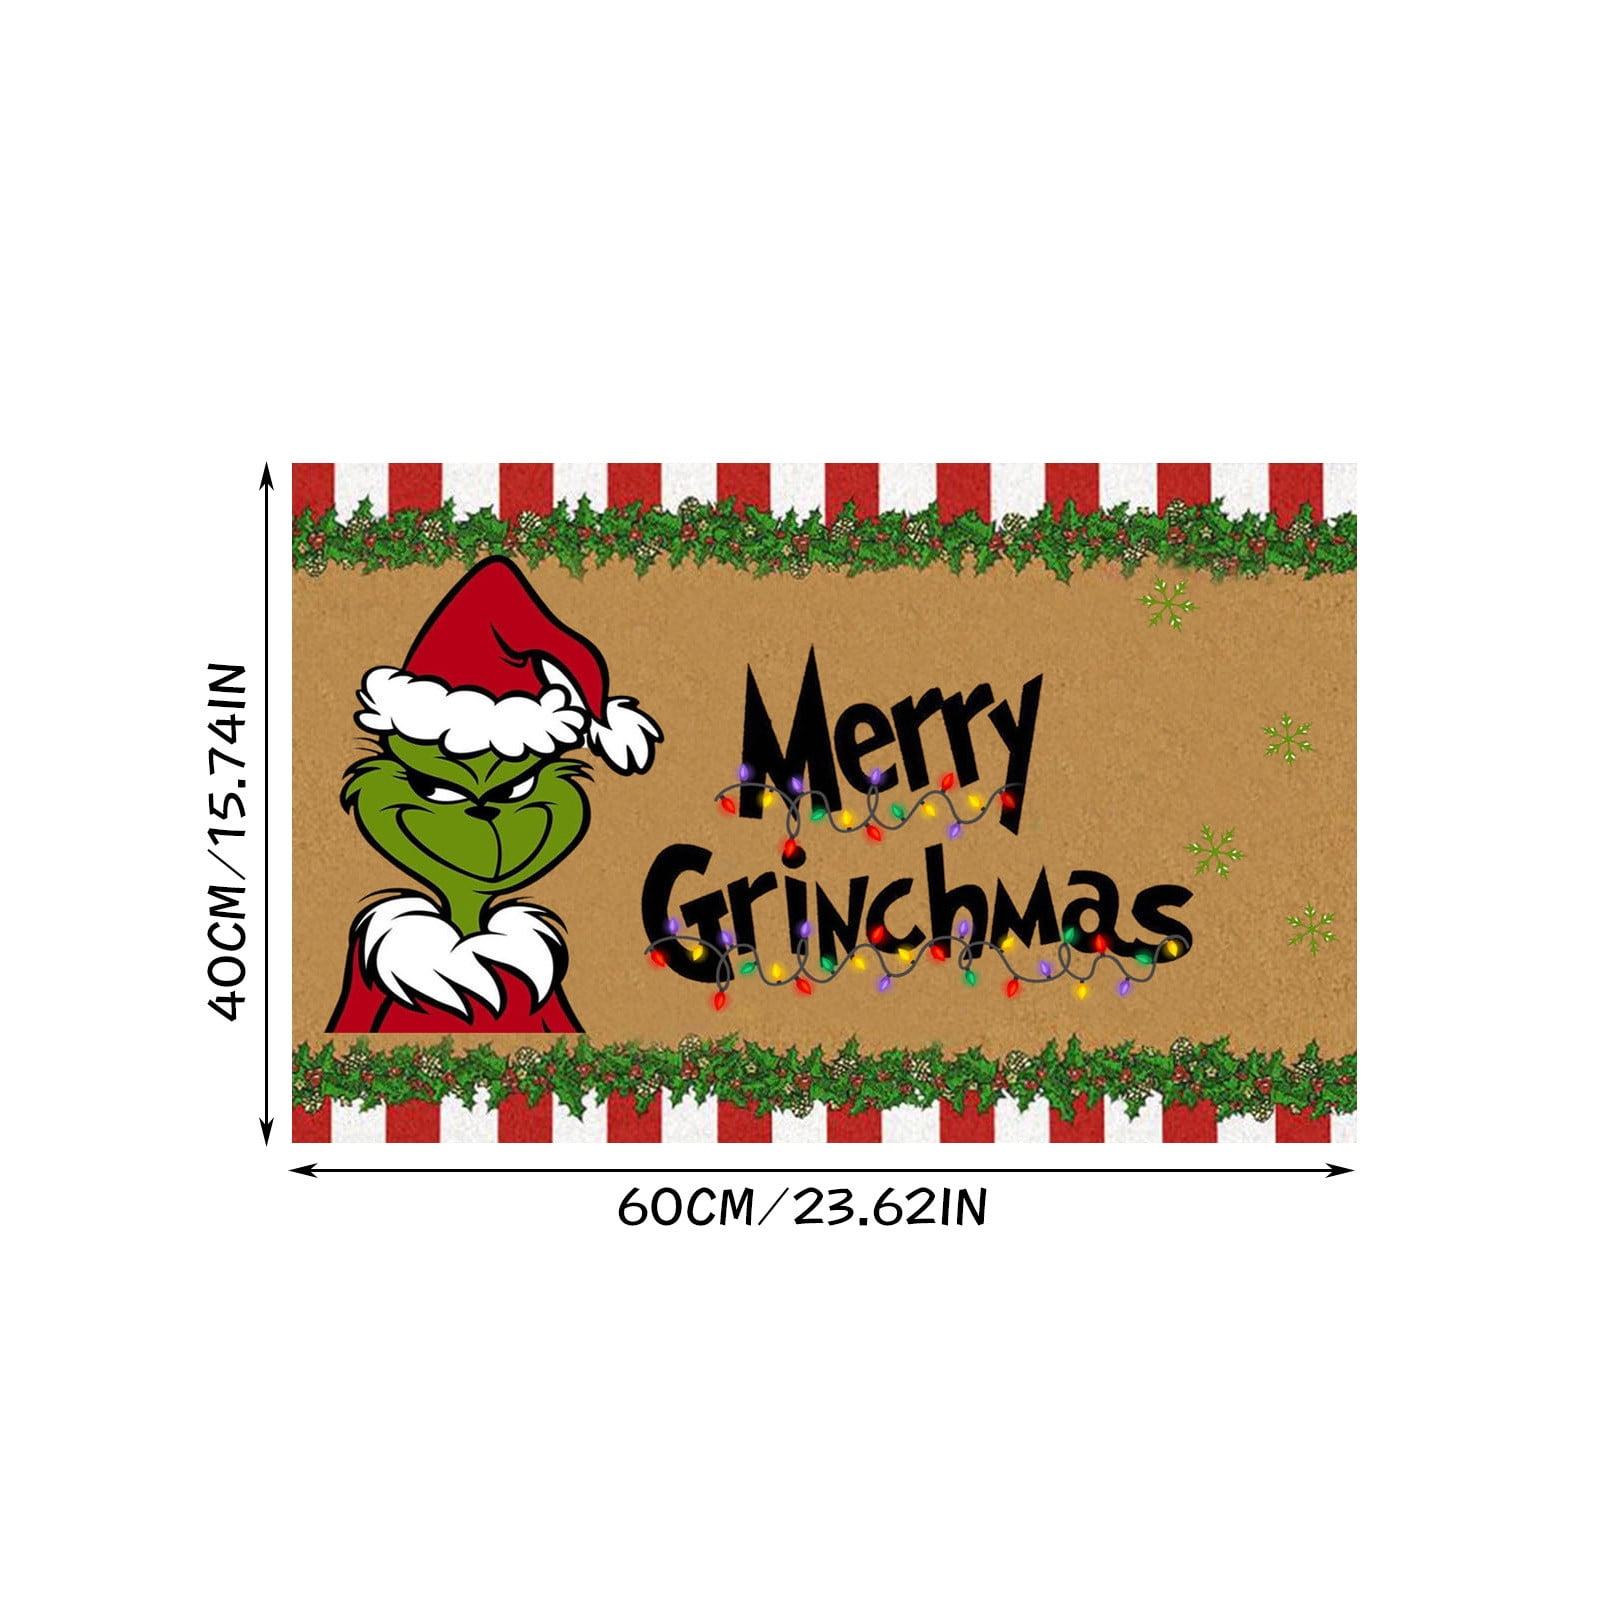 QISIWOLE Christmas Doormat ,Winter Holiday Indoor Outdoor Home Garden  Non-Skid Floor Mat,Christmas Decorative Rubber Door Rug, 19.7*31.5” 